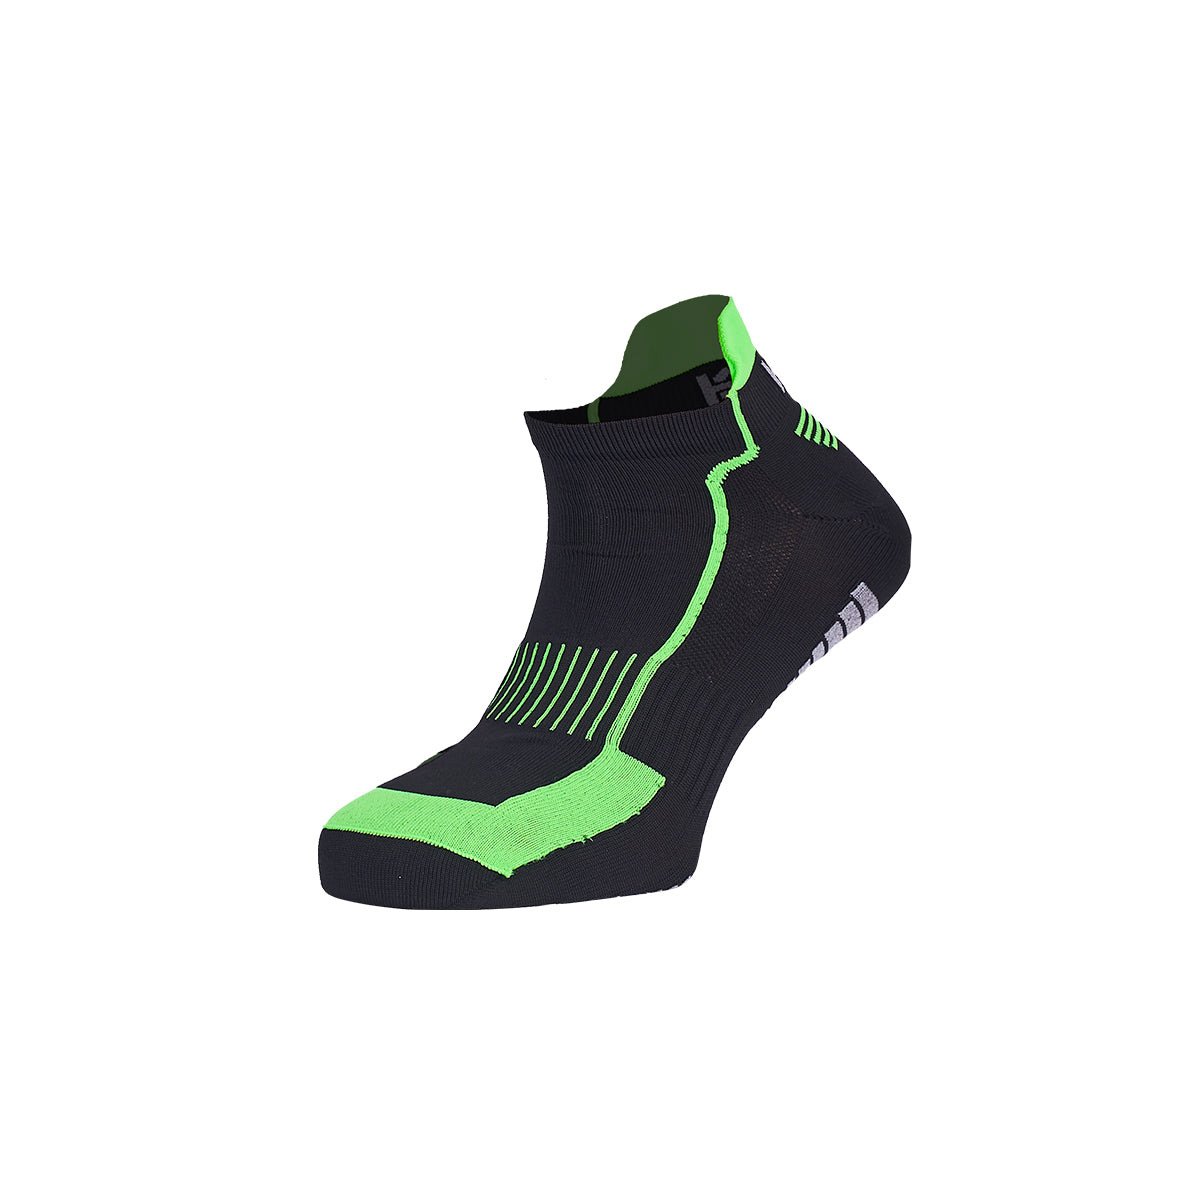 NUBLO tehnične kompresijske nogavice (zelene)